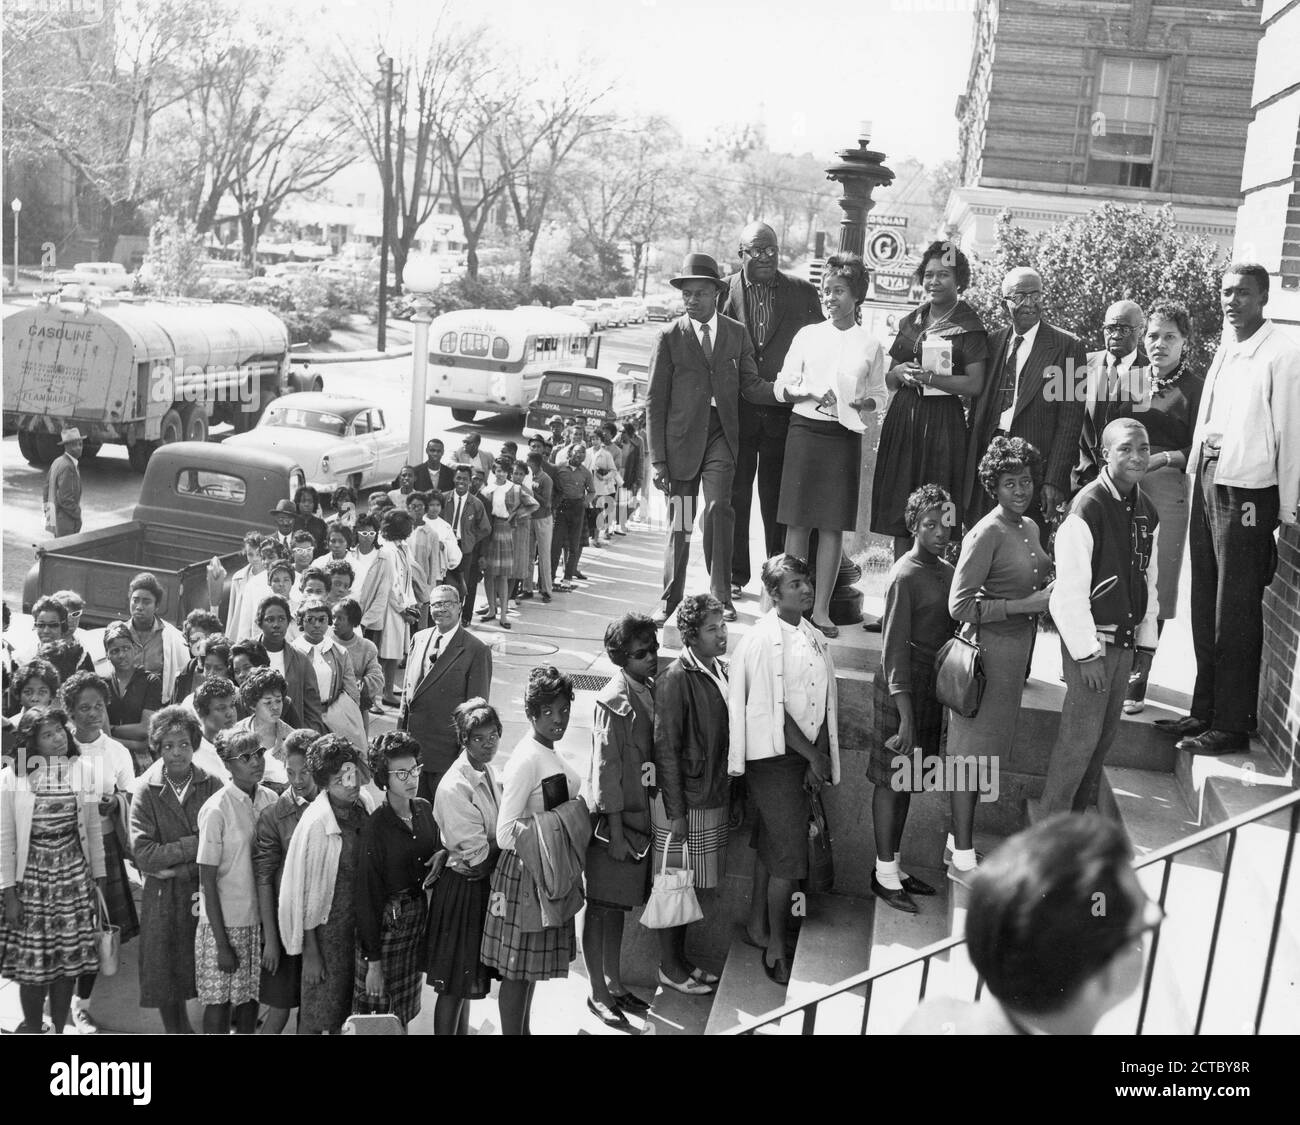 Les résidents d'un quartier afro-américain se sont inscrits pour voter, Macon, GA, 1962. (Photo de l'Agence d'information des États-Unis/RBM Vintage Images) Banque D'Images